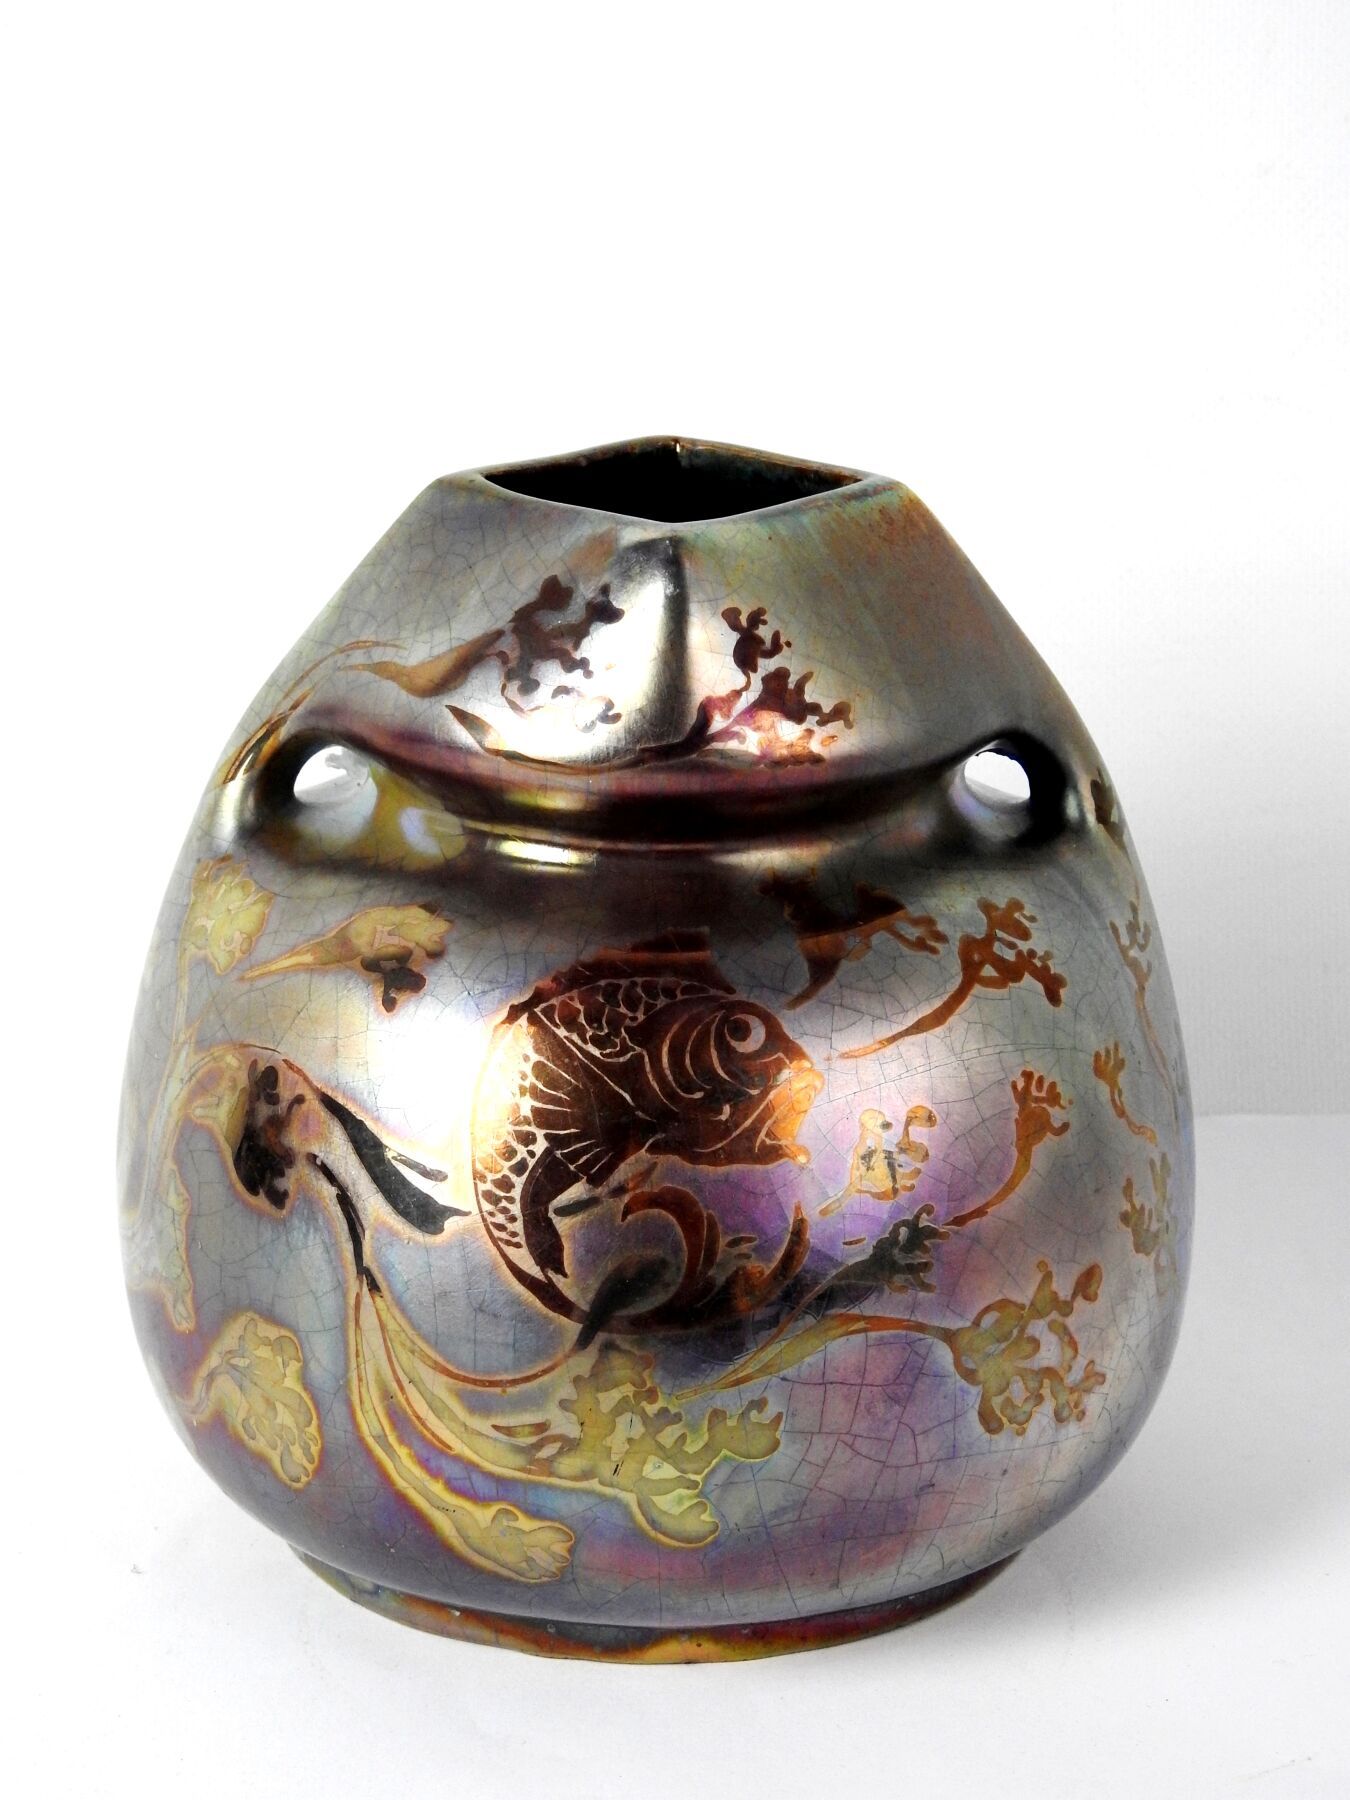 Null 蒙蒂埃斯

球状陶瓷花瓶，具有强烈的金属虹彩，装饰着海藻和奇妙动物中的鱼。颈部略微收窄，装饰有风格化的植物图案，有两个小把手和一个方形口。装饰上有签名&hellip;